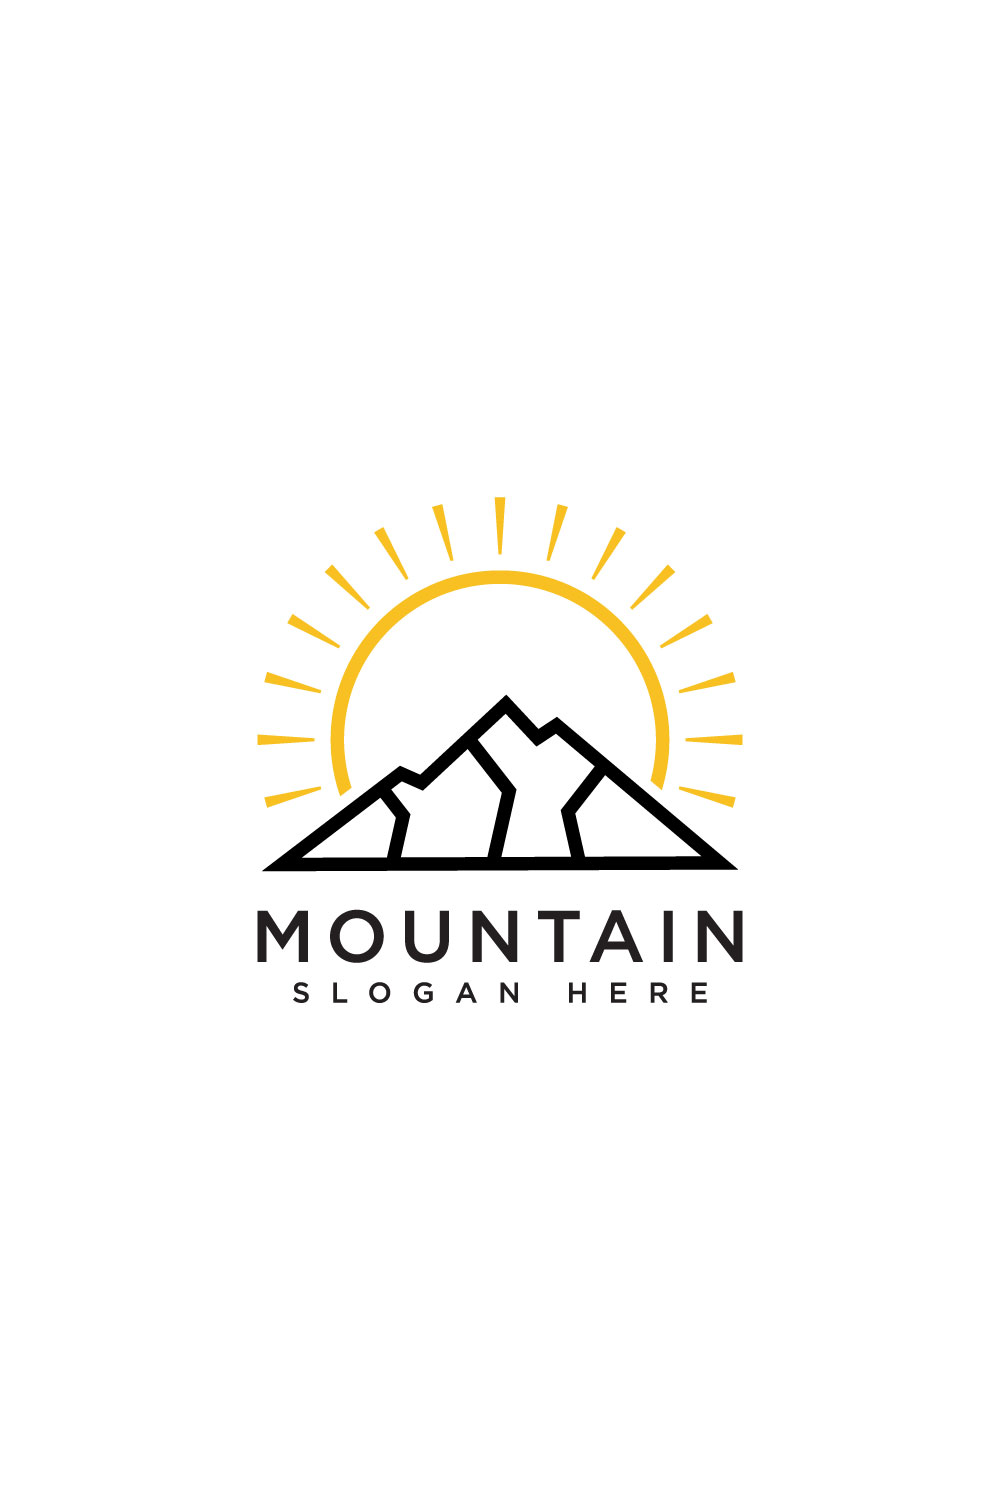 mountain logo design vector pinterest preview image.